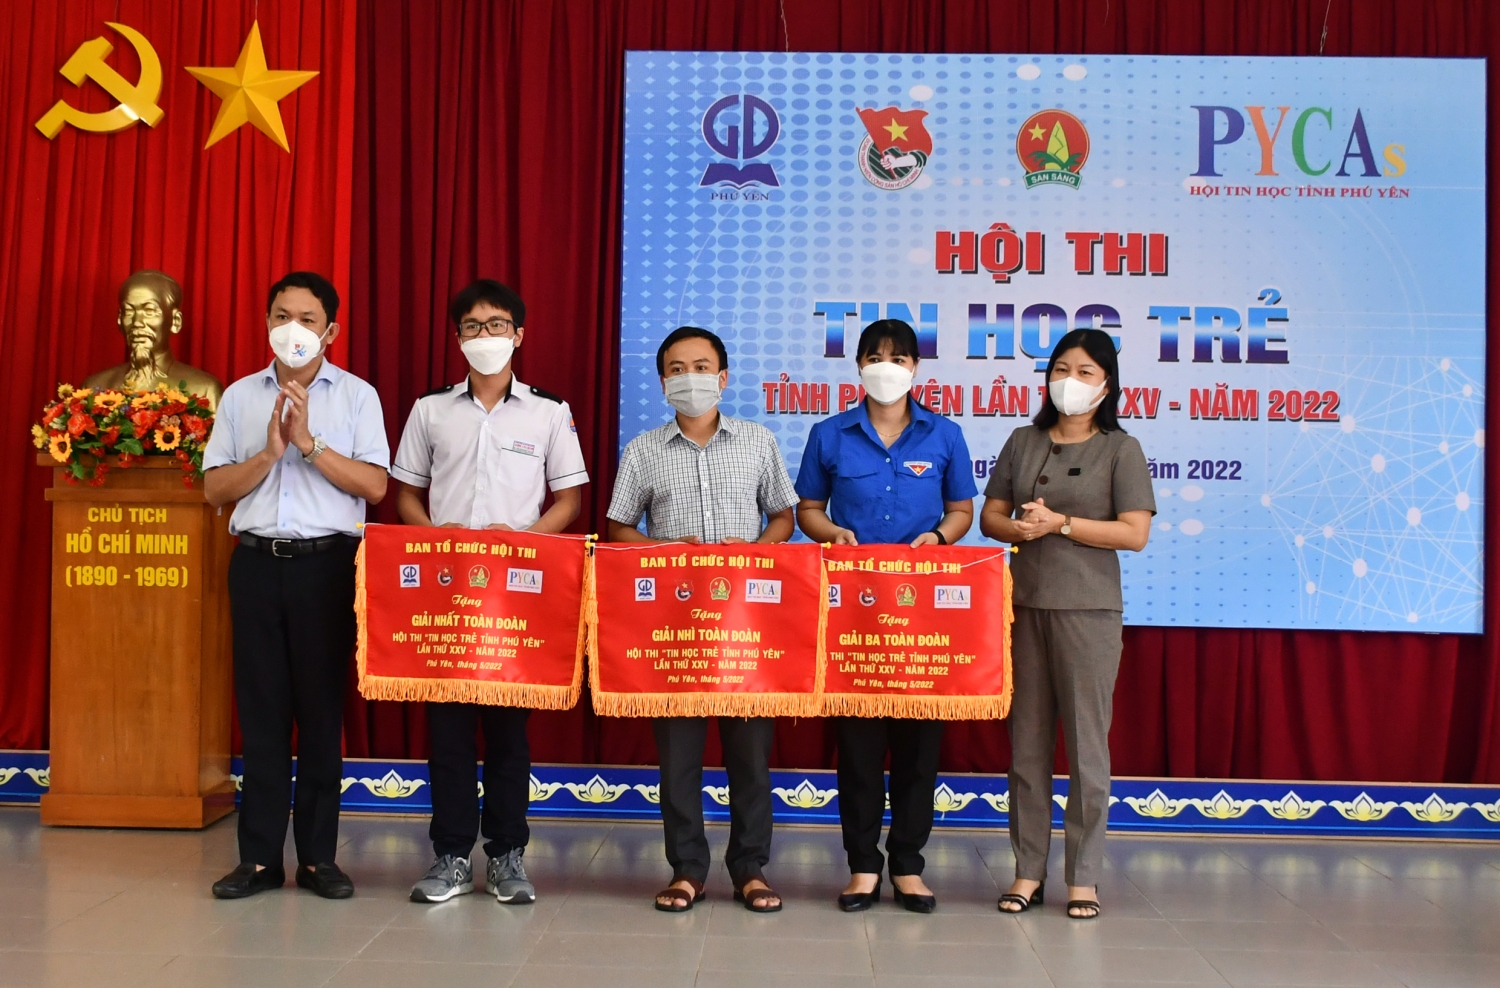 Đồng chí Lê Thị Ngọc Hoa và đồng chí Phan Xuân Hạnh trao Giải toàn đoàn cho các đơn vị tham gia hội thi.